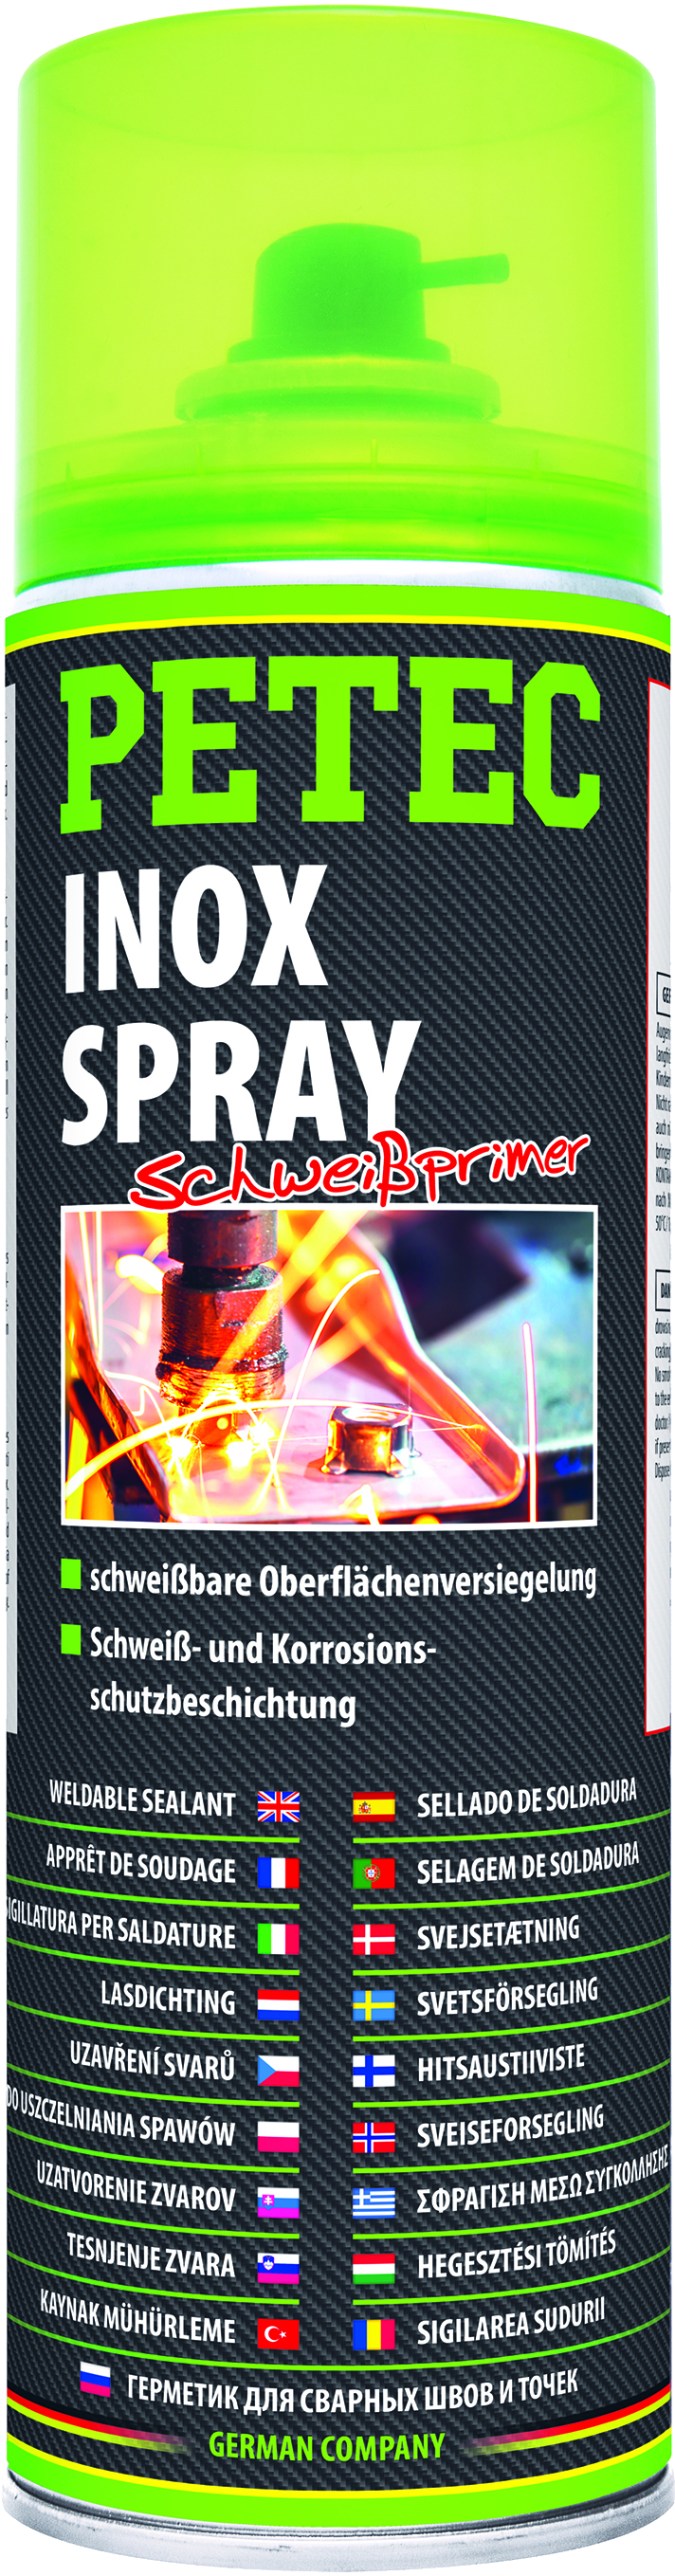 TECHNOLIT INOX Spray Korrosionsschutz VETERANICAR, 24,95 €